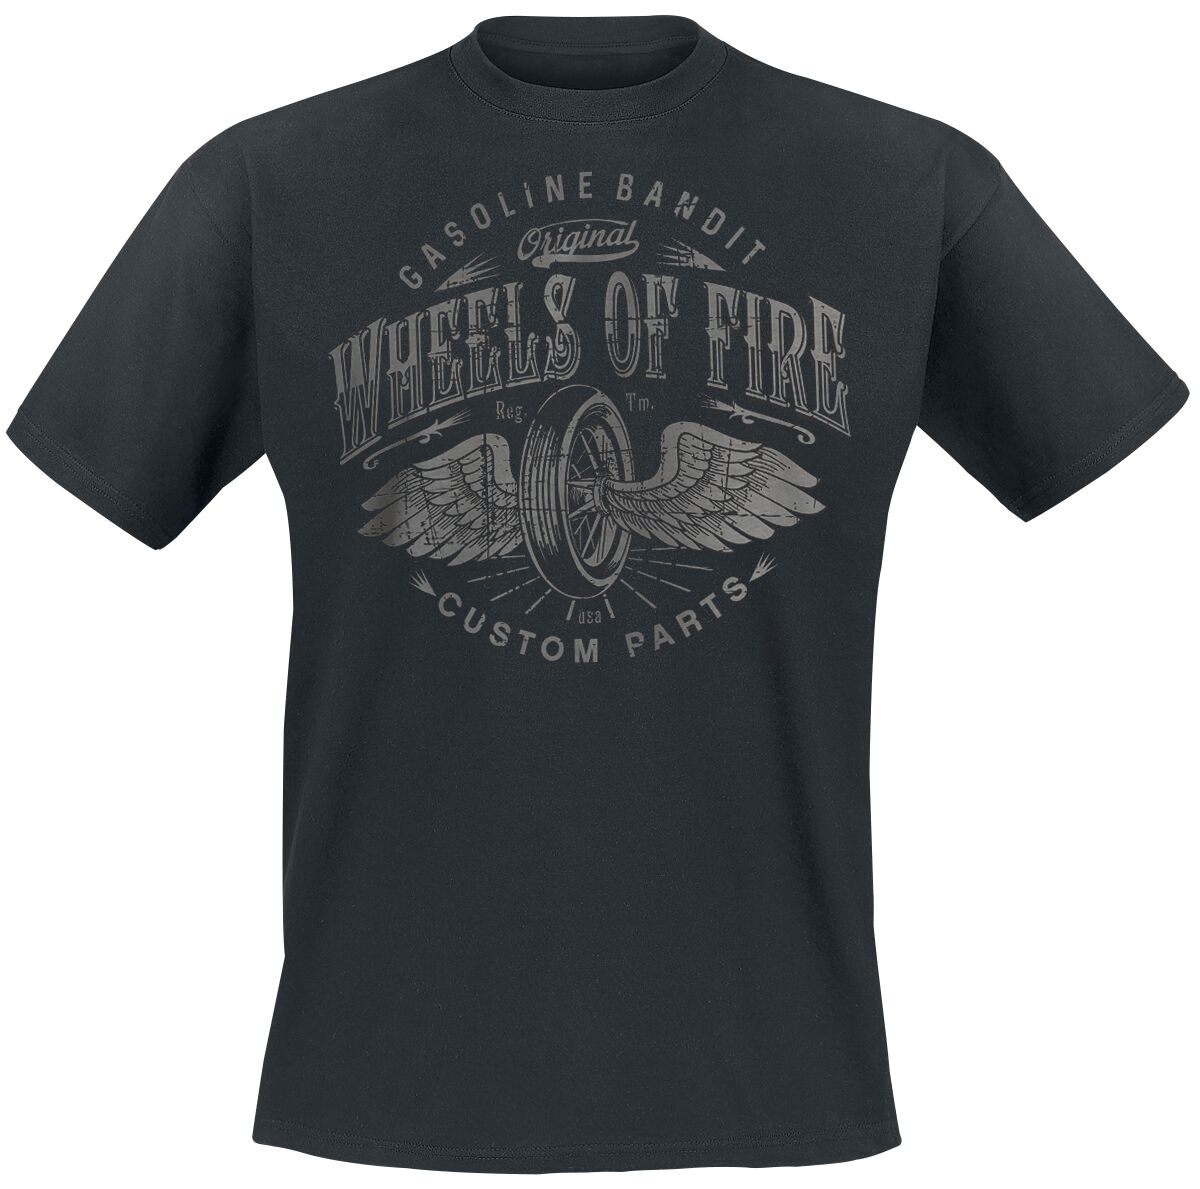 Gasoline Bandit - Rockabilly T-Shirt - Wheels Of Fire - S bis 4XL - für Männer - Größe S - schwarz